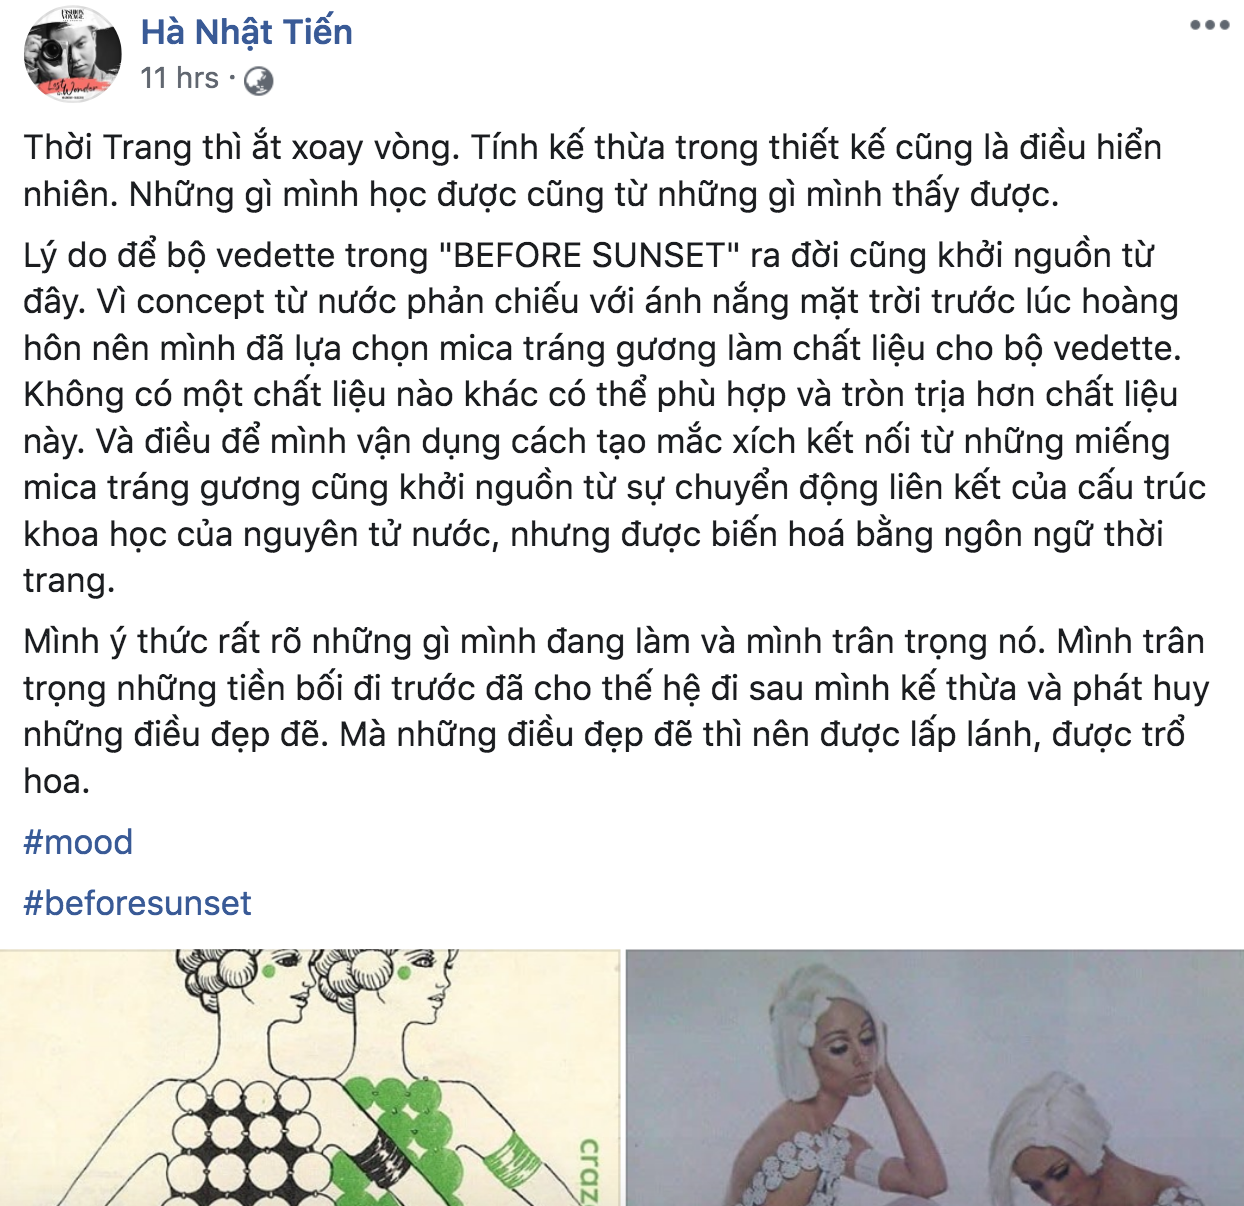 Drama làng thiết kế: Tố Hà Nhật Tiến đạo nhái mình, Lưu Ngọc Kim Khanh lại bị netizen bóc ngược là cũng “vay mượn” ý tưởng không ít - Ảnh 4.